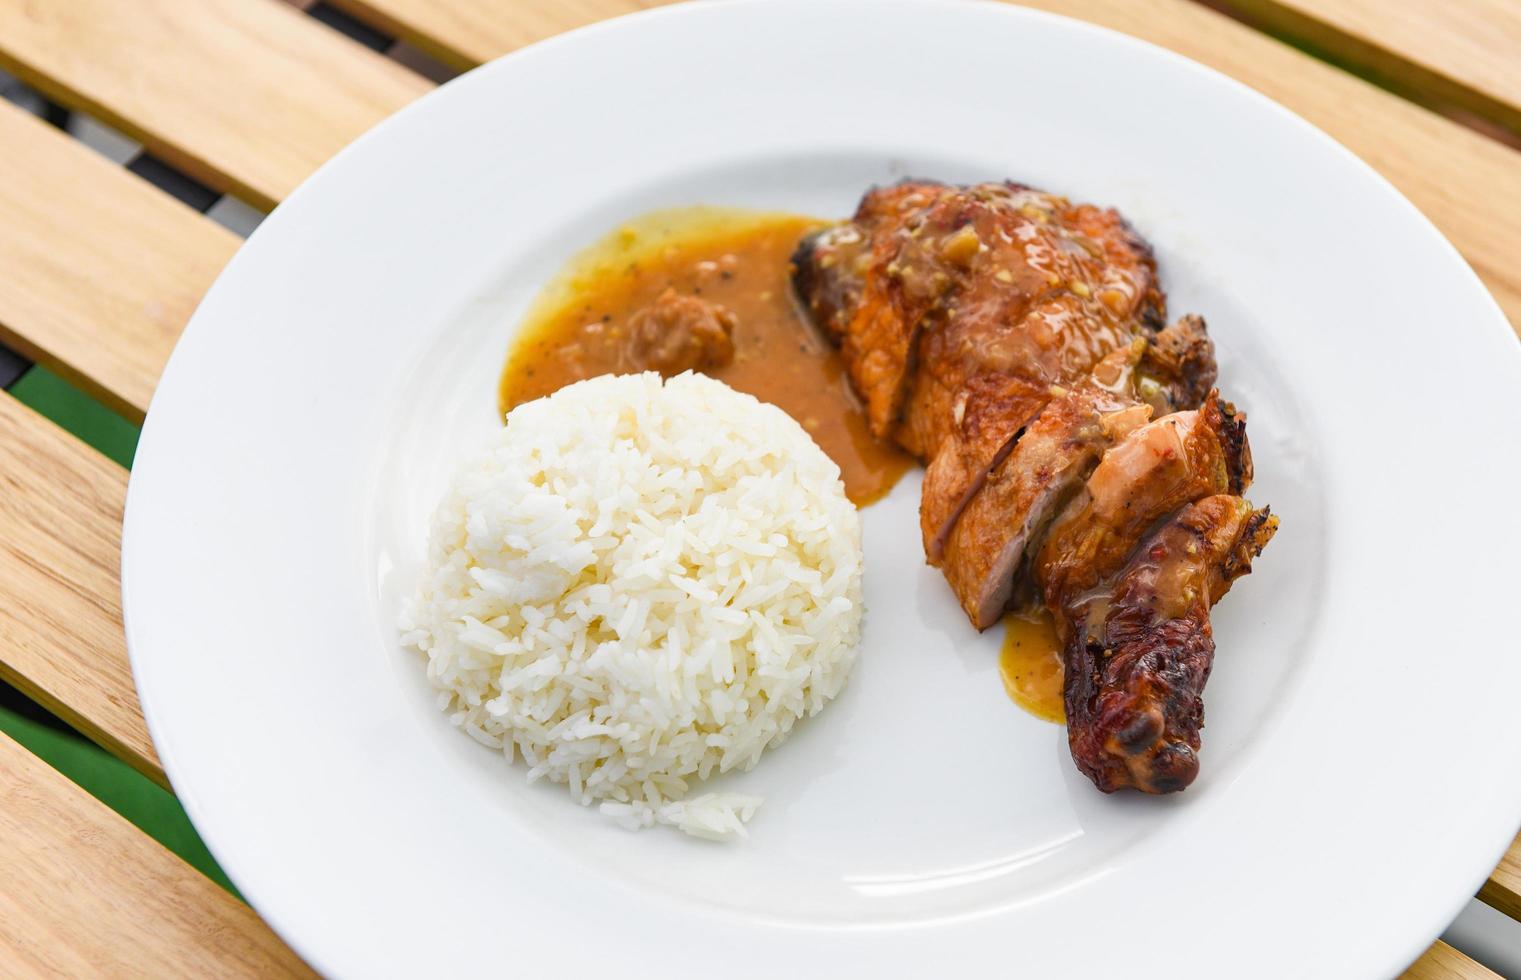 cibo di riso tailandese, riso bianco cotto e pollo alla griglia con salsa su piatto bianco e sfondo tavolo in legno, cosce di pollo barbecue speziate alla griglia foto